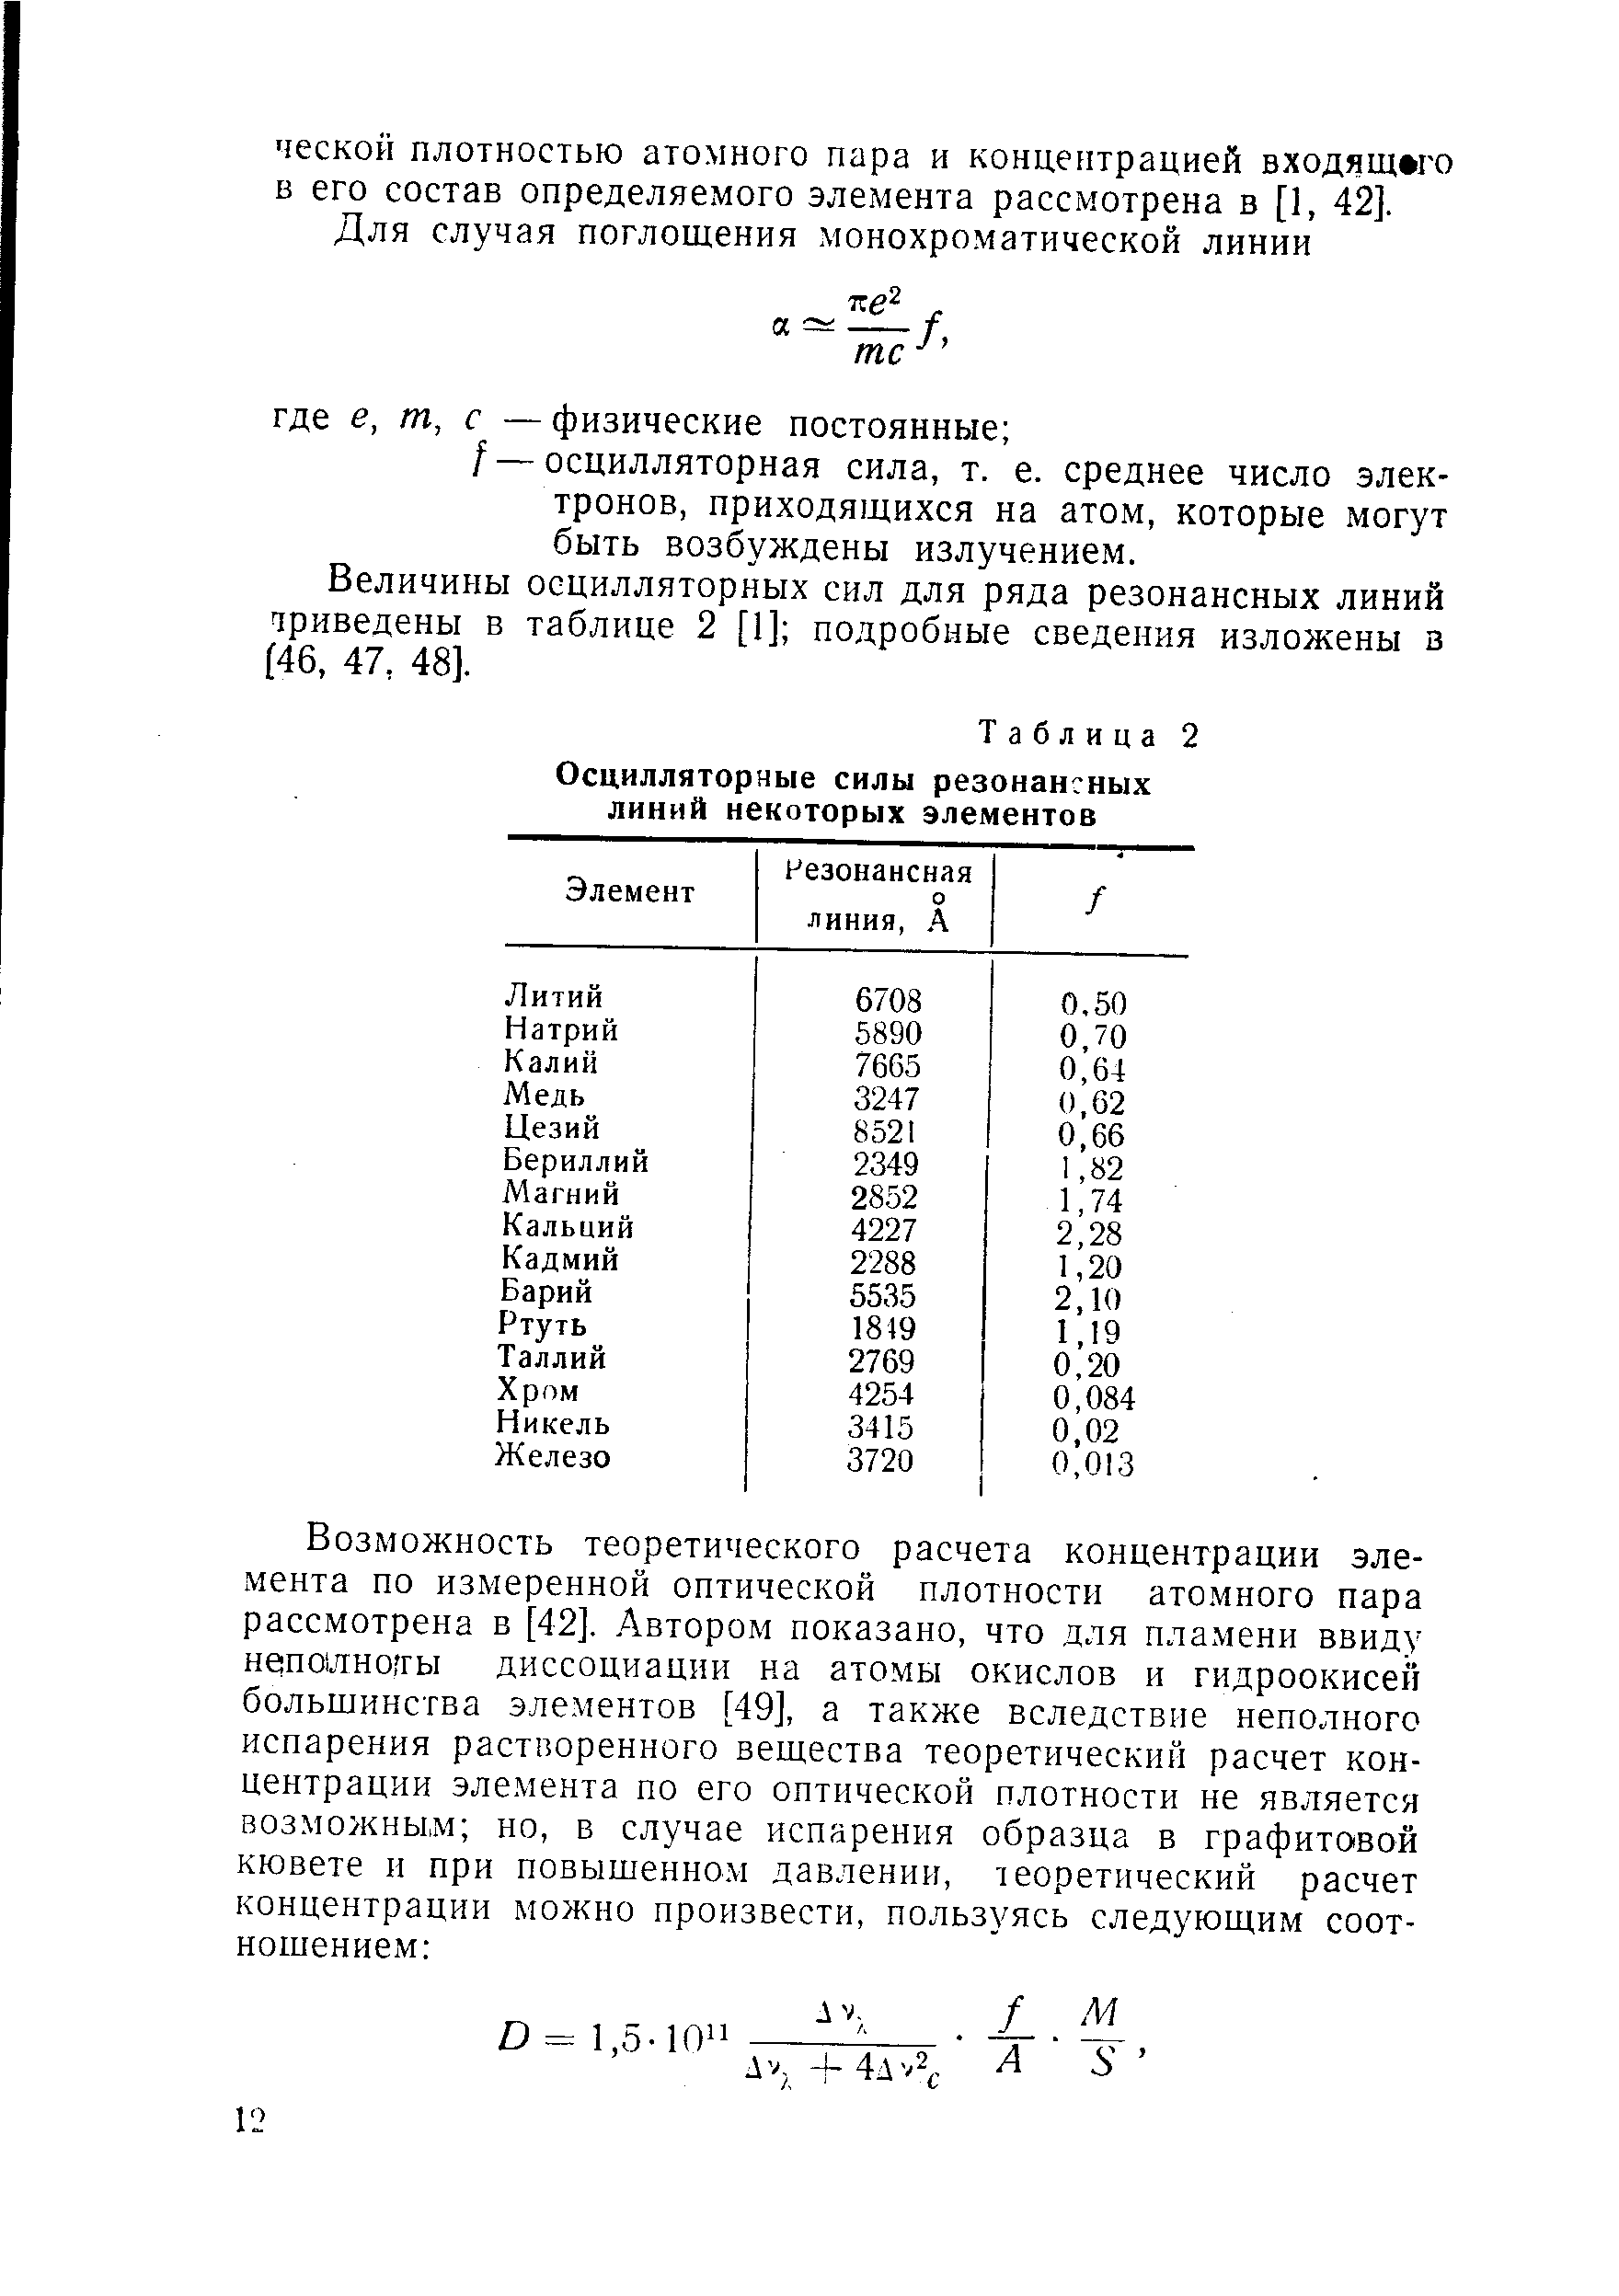 Величины осцилляторных сил для ряда резонансных линий триведены в таблице 2 [1] подробные сведения изложены з (46, 47, 48].